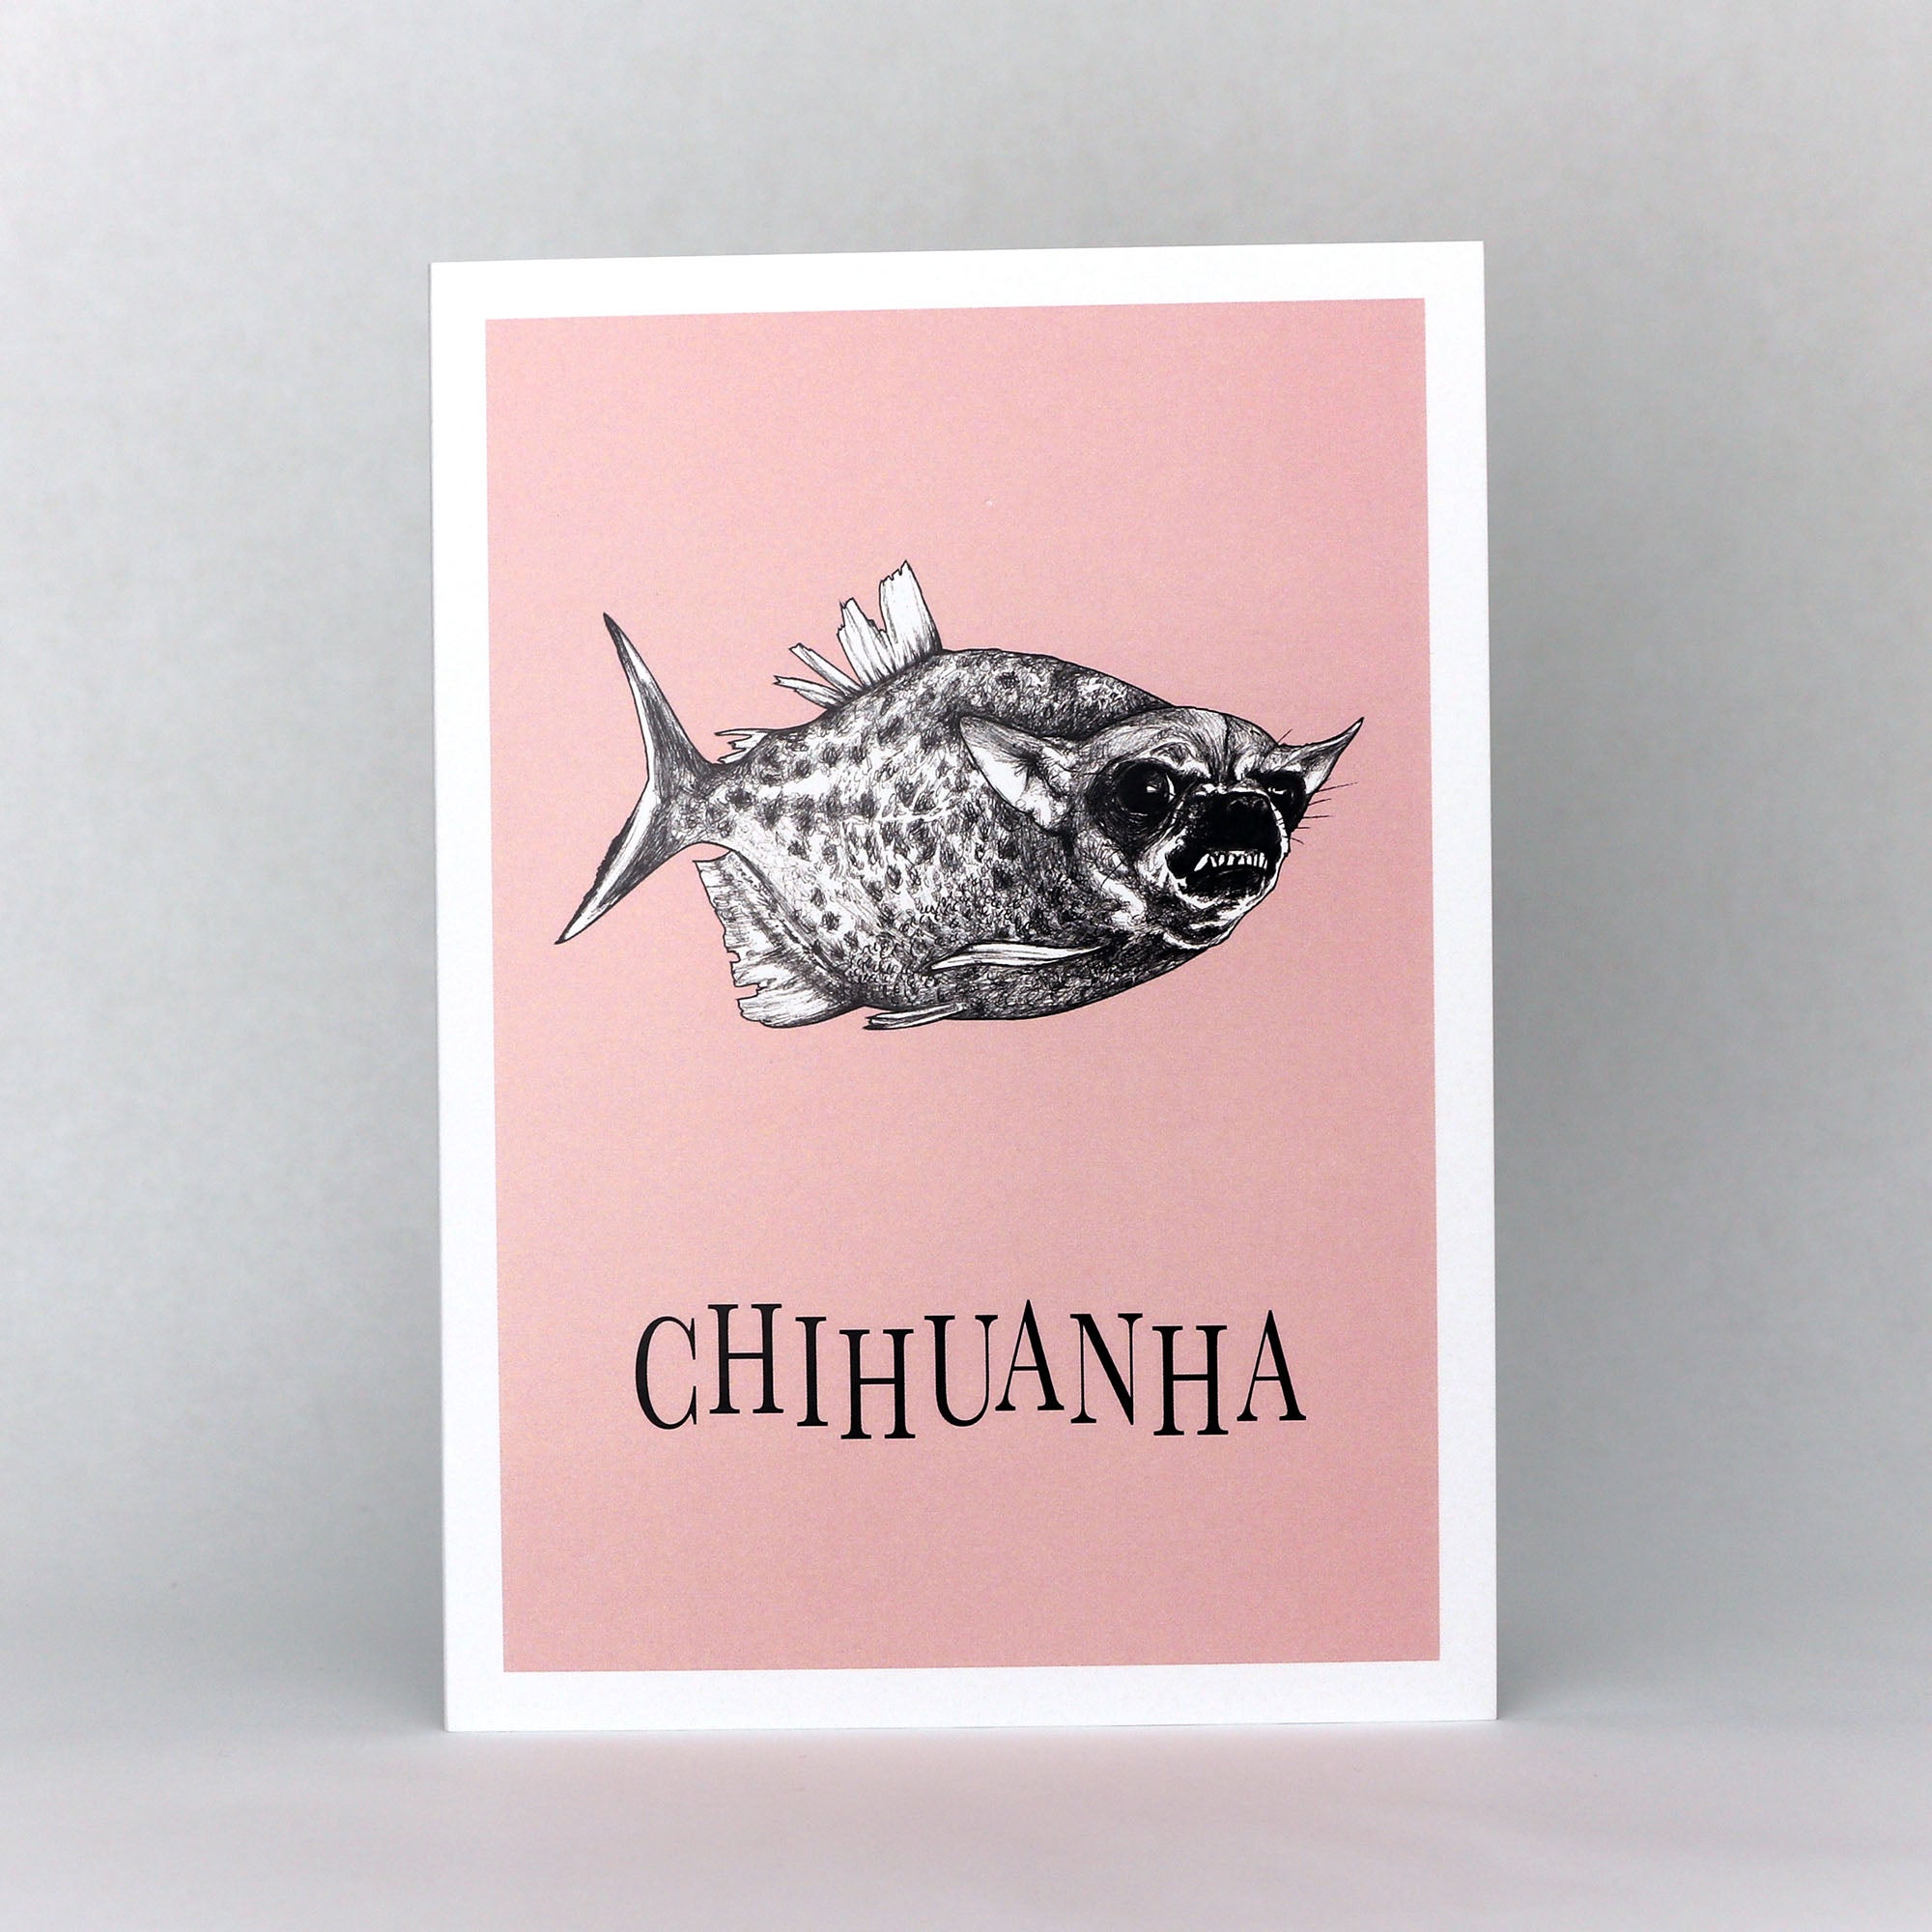 Chihuanha | Piranha + Chihuahua Hybrid Animal | 5x7" Greeting Card